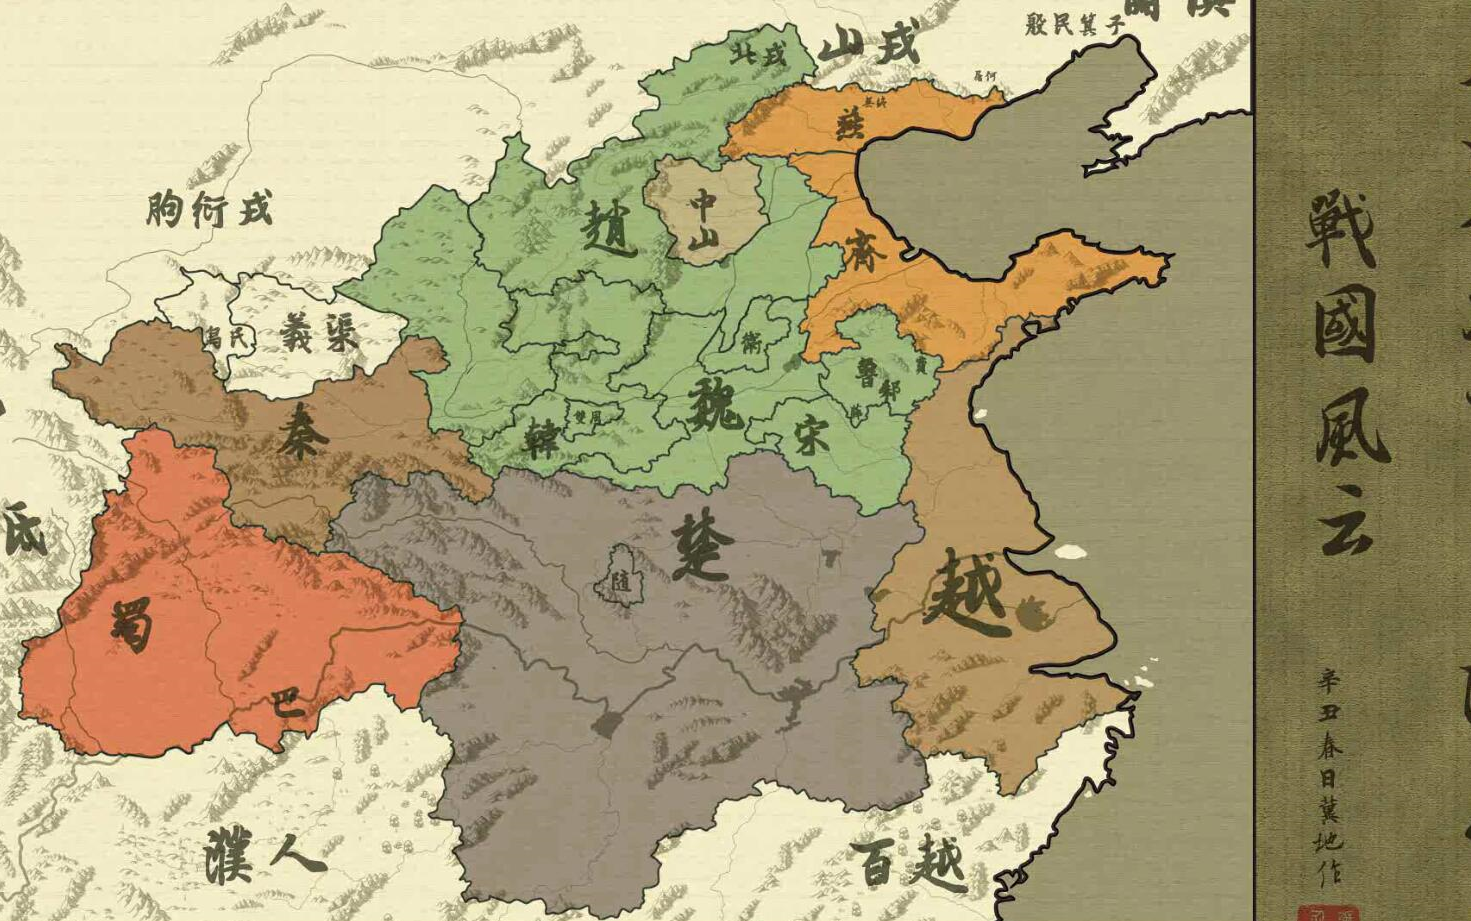 春申君黃歇通過努力使楚國在戰國時期獲得了很高的政治地位